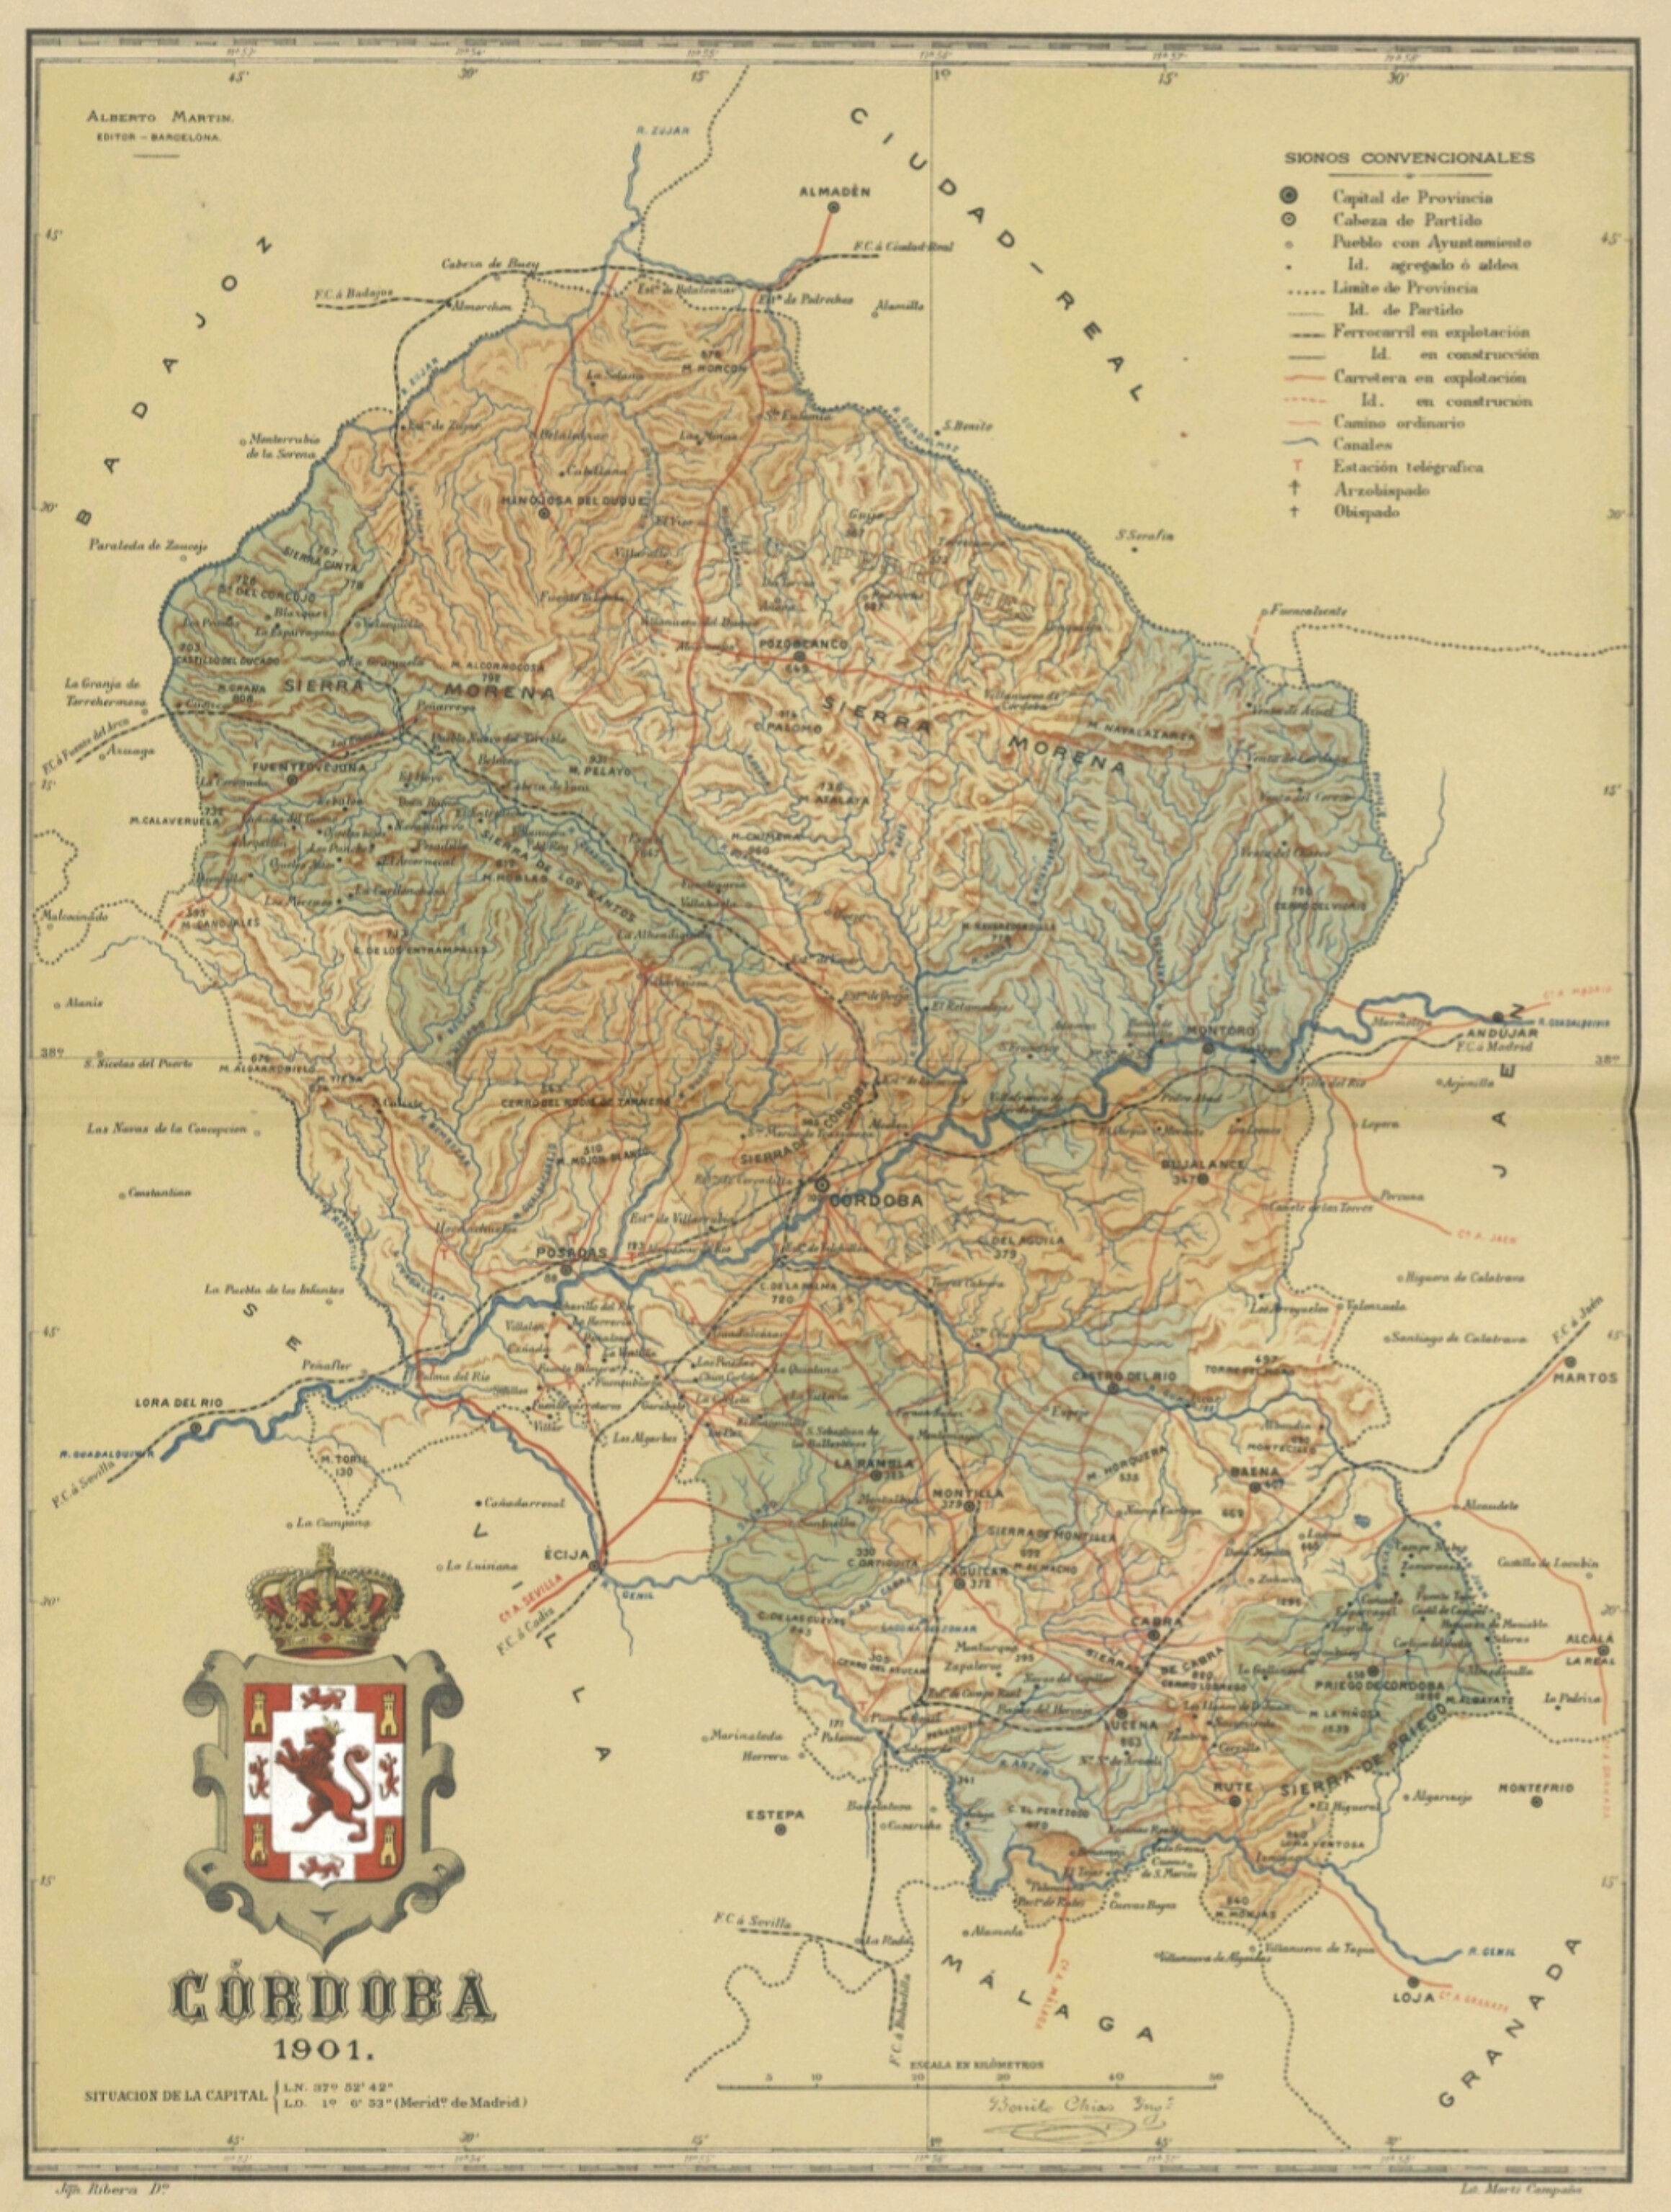 Mapa de la Provincia de Cordoba Chias 1901.jpg